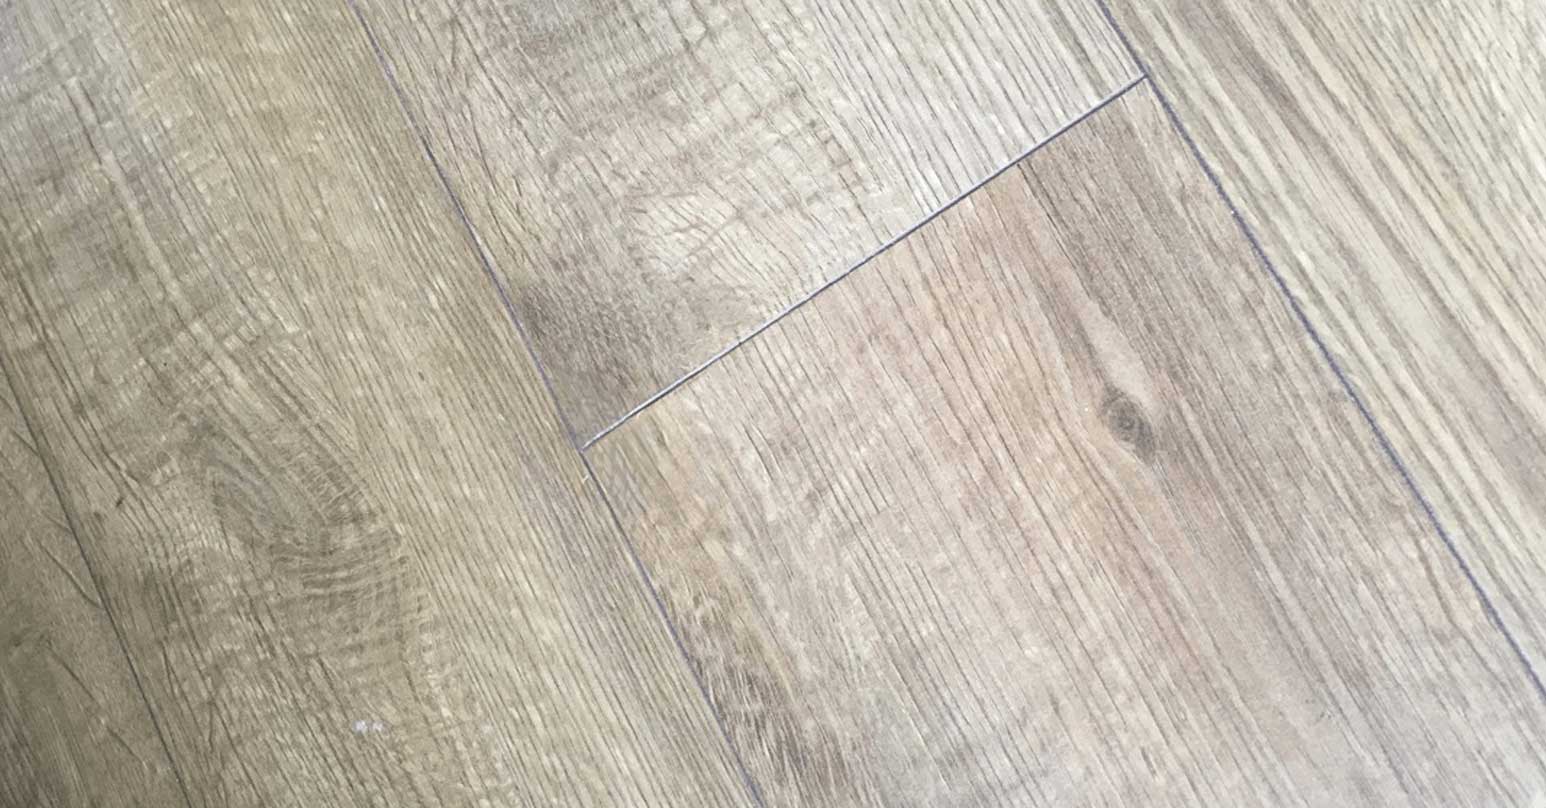 Dented laminate flooring – After repair